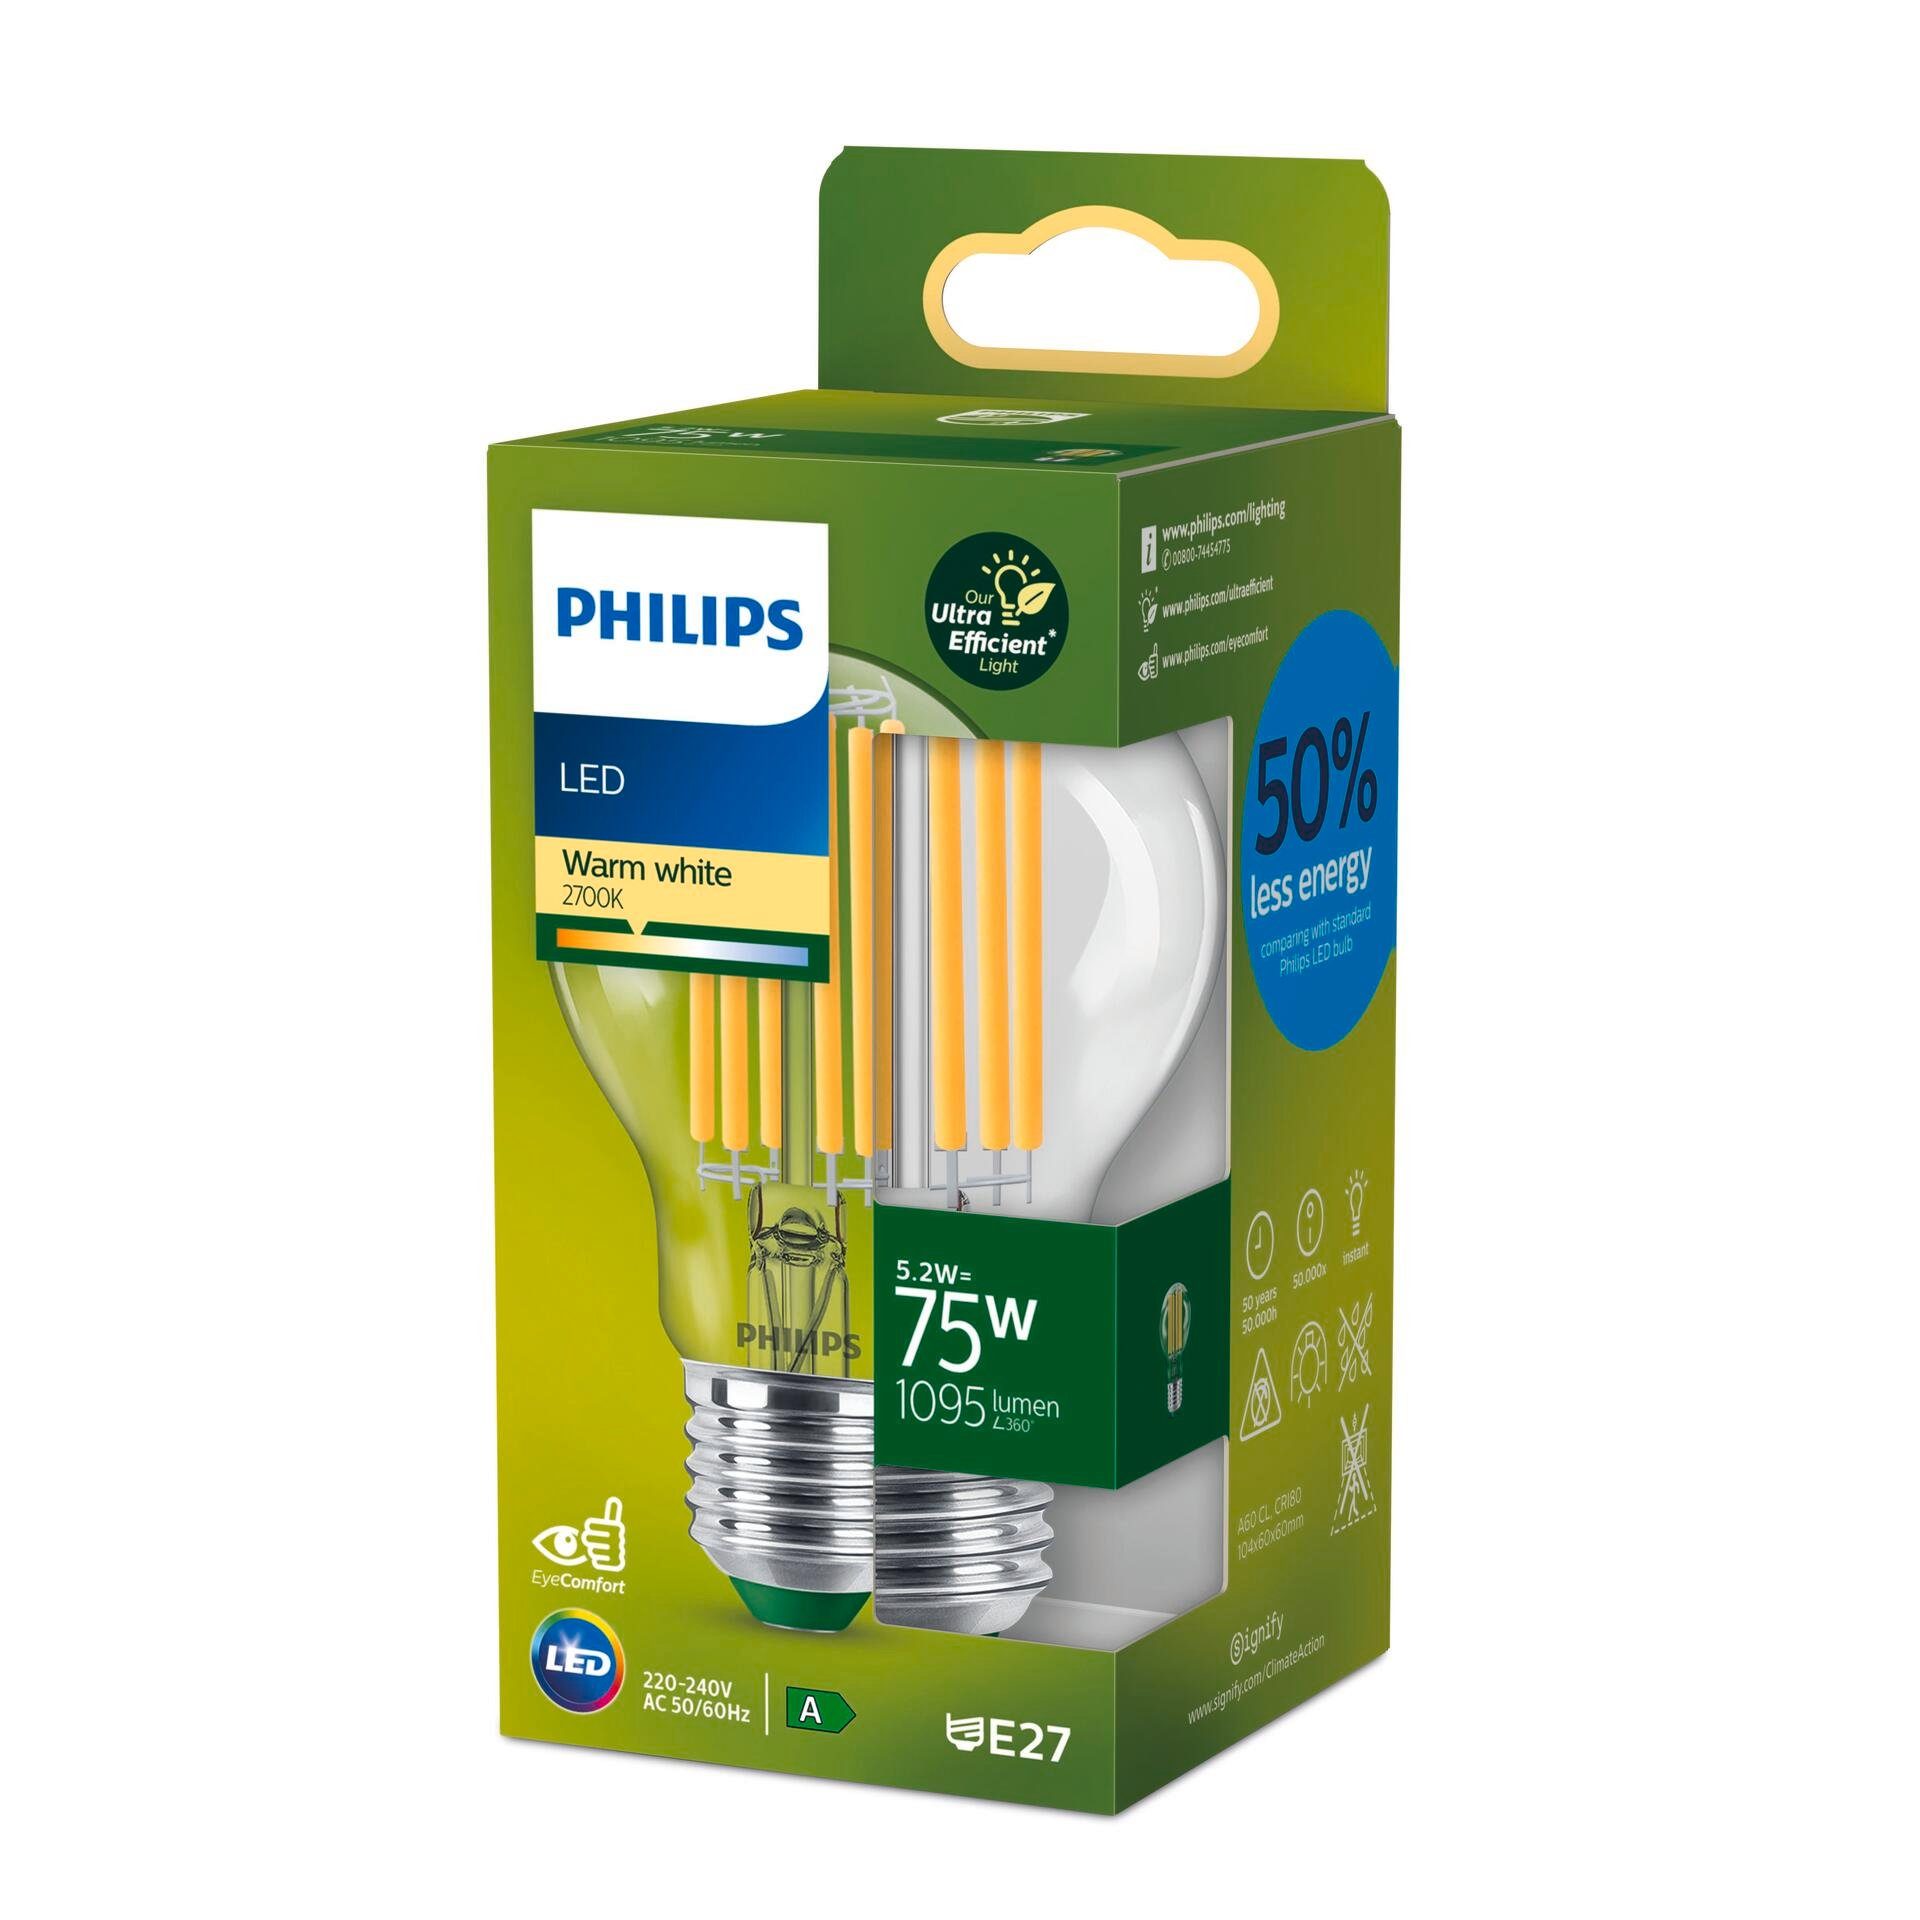 LED LED-Lampe, integriert fest LED-Leuchte Smarte Philips